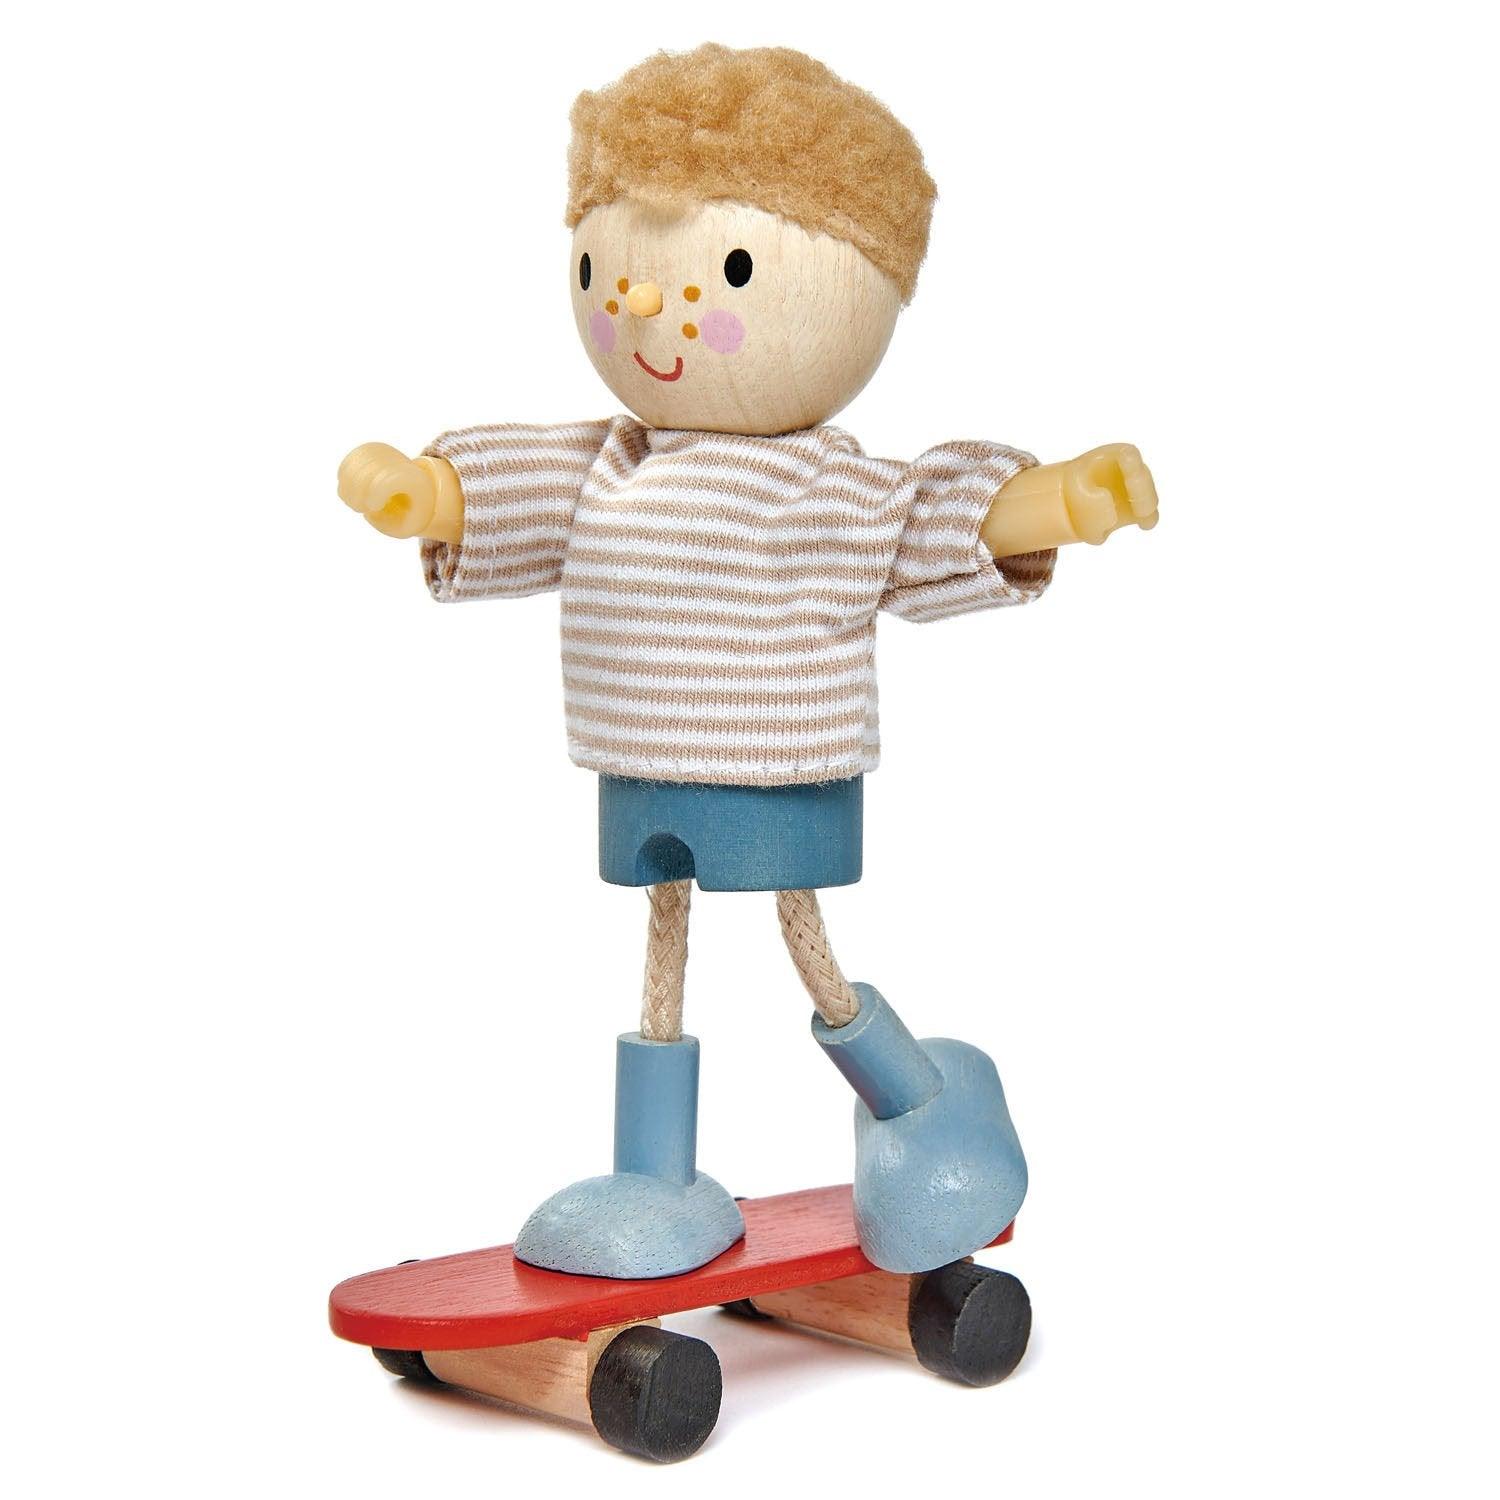 Giocattoli teneri: bambola Edward su uno skateboard